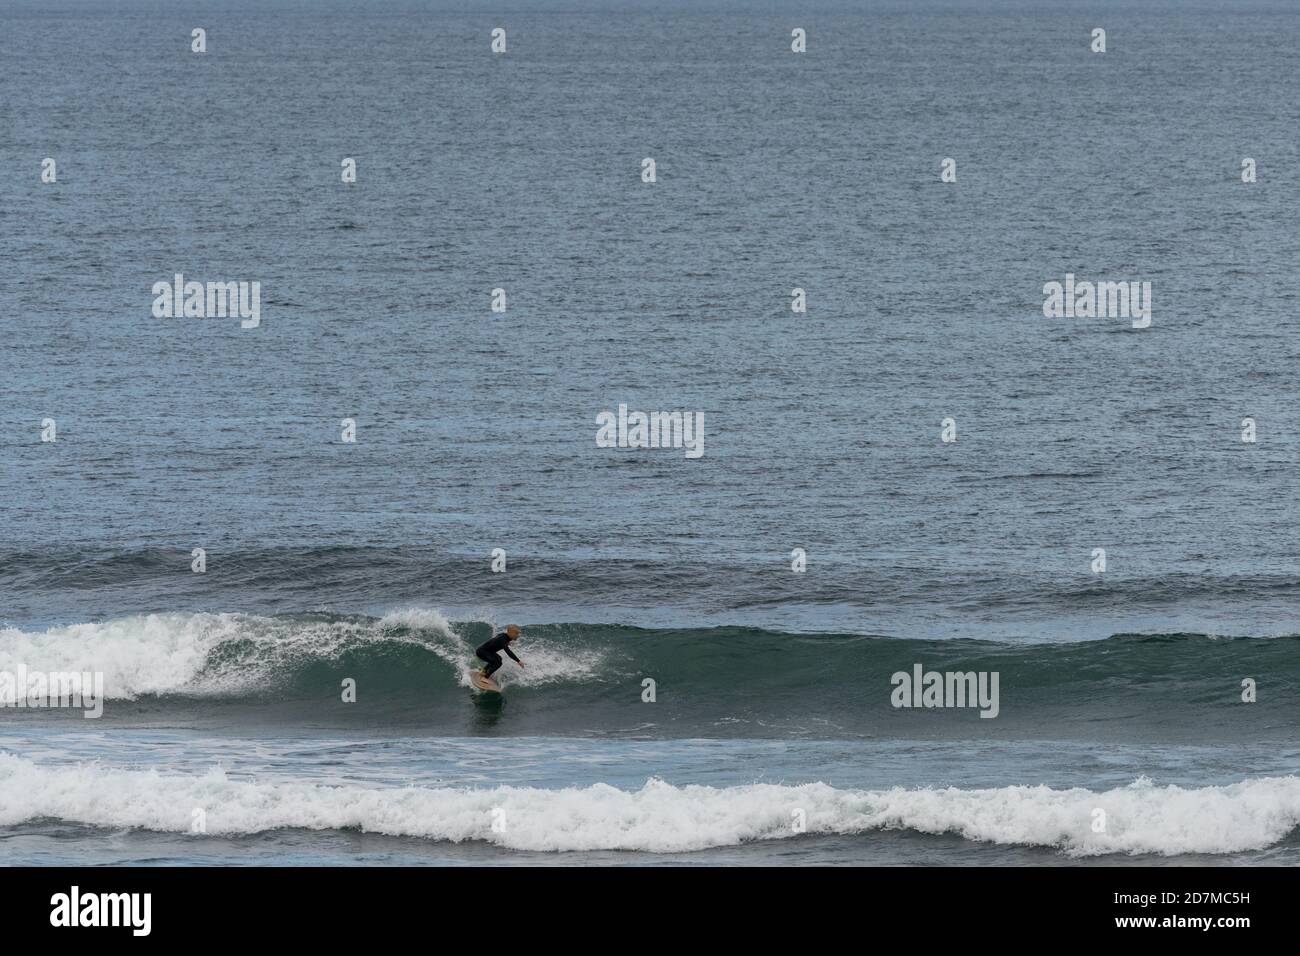 Saint-Jean-de-Luz, P-A / Francia - 22 de octubre de 2020: surfista  disfrutando de una sesión de surf en el Atlántico Fotografía de stock -  Alamy